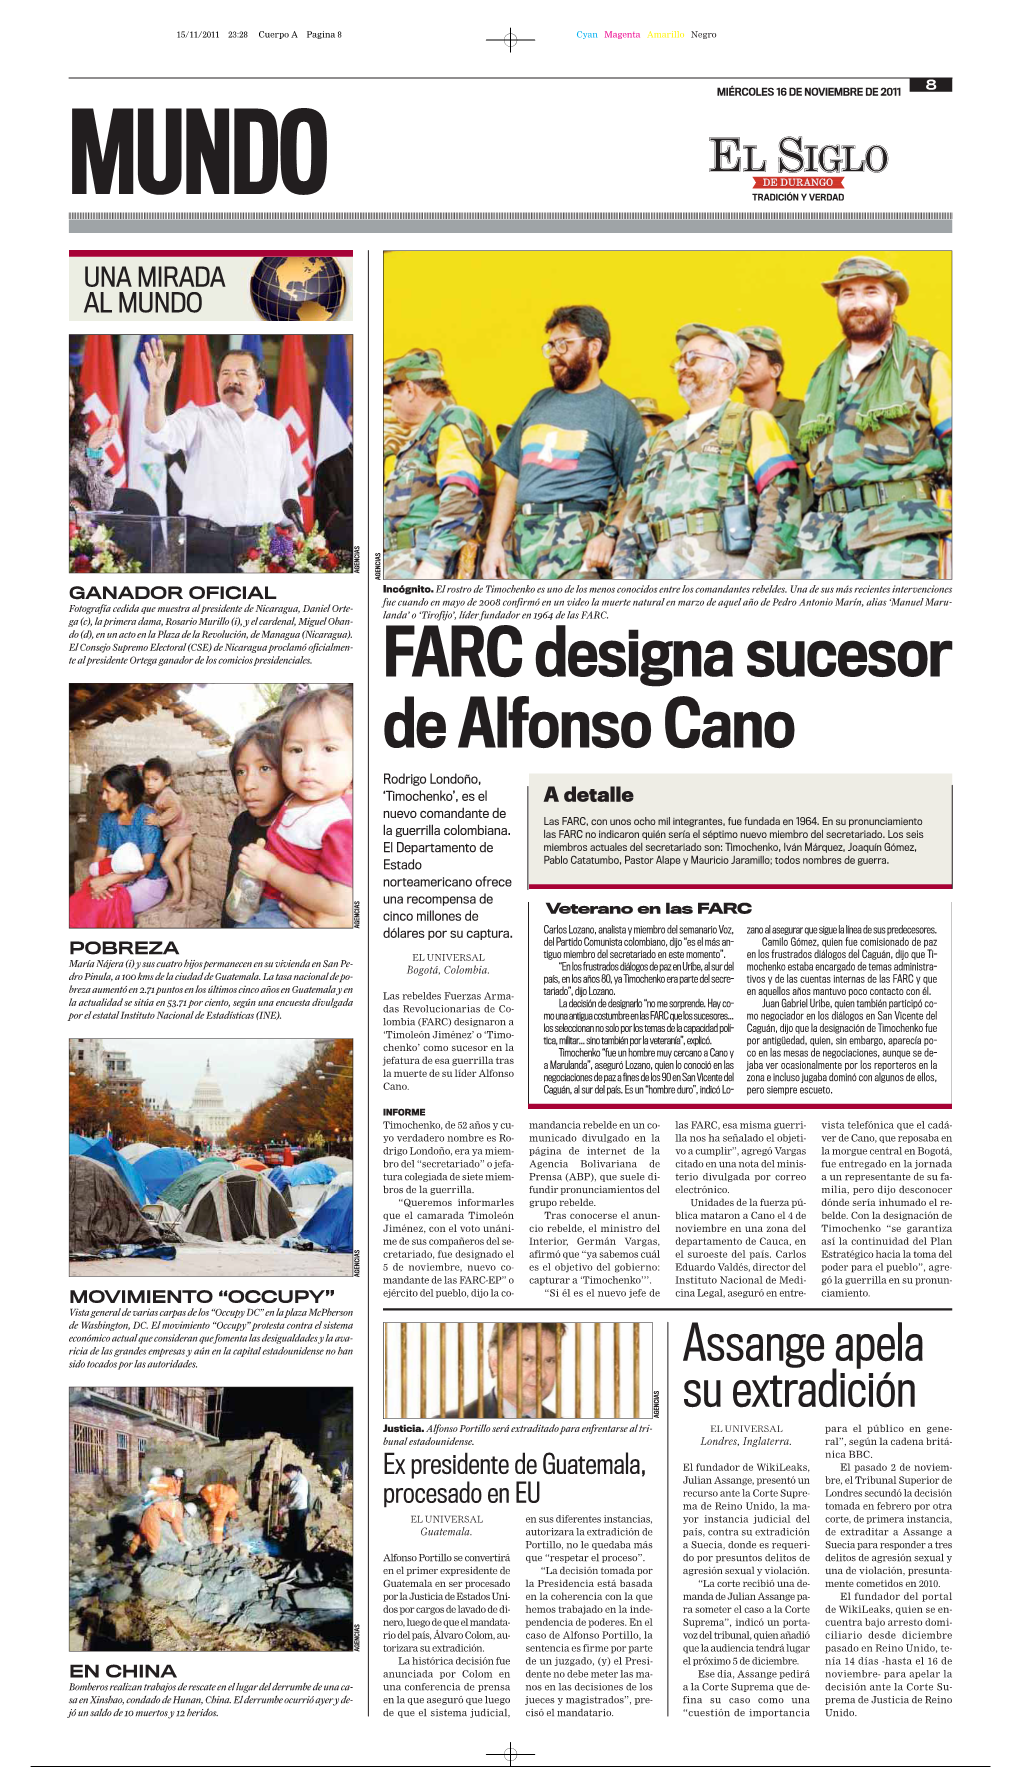 FARC Designa Sucesor De Alfonso Cano